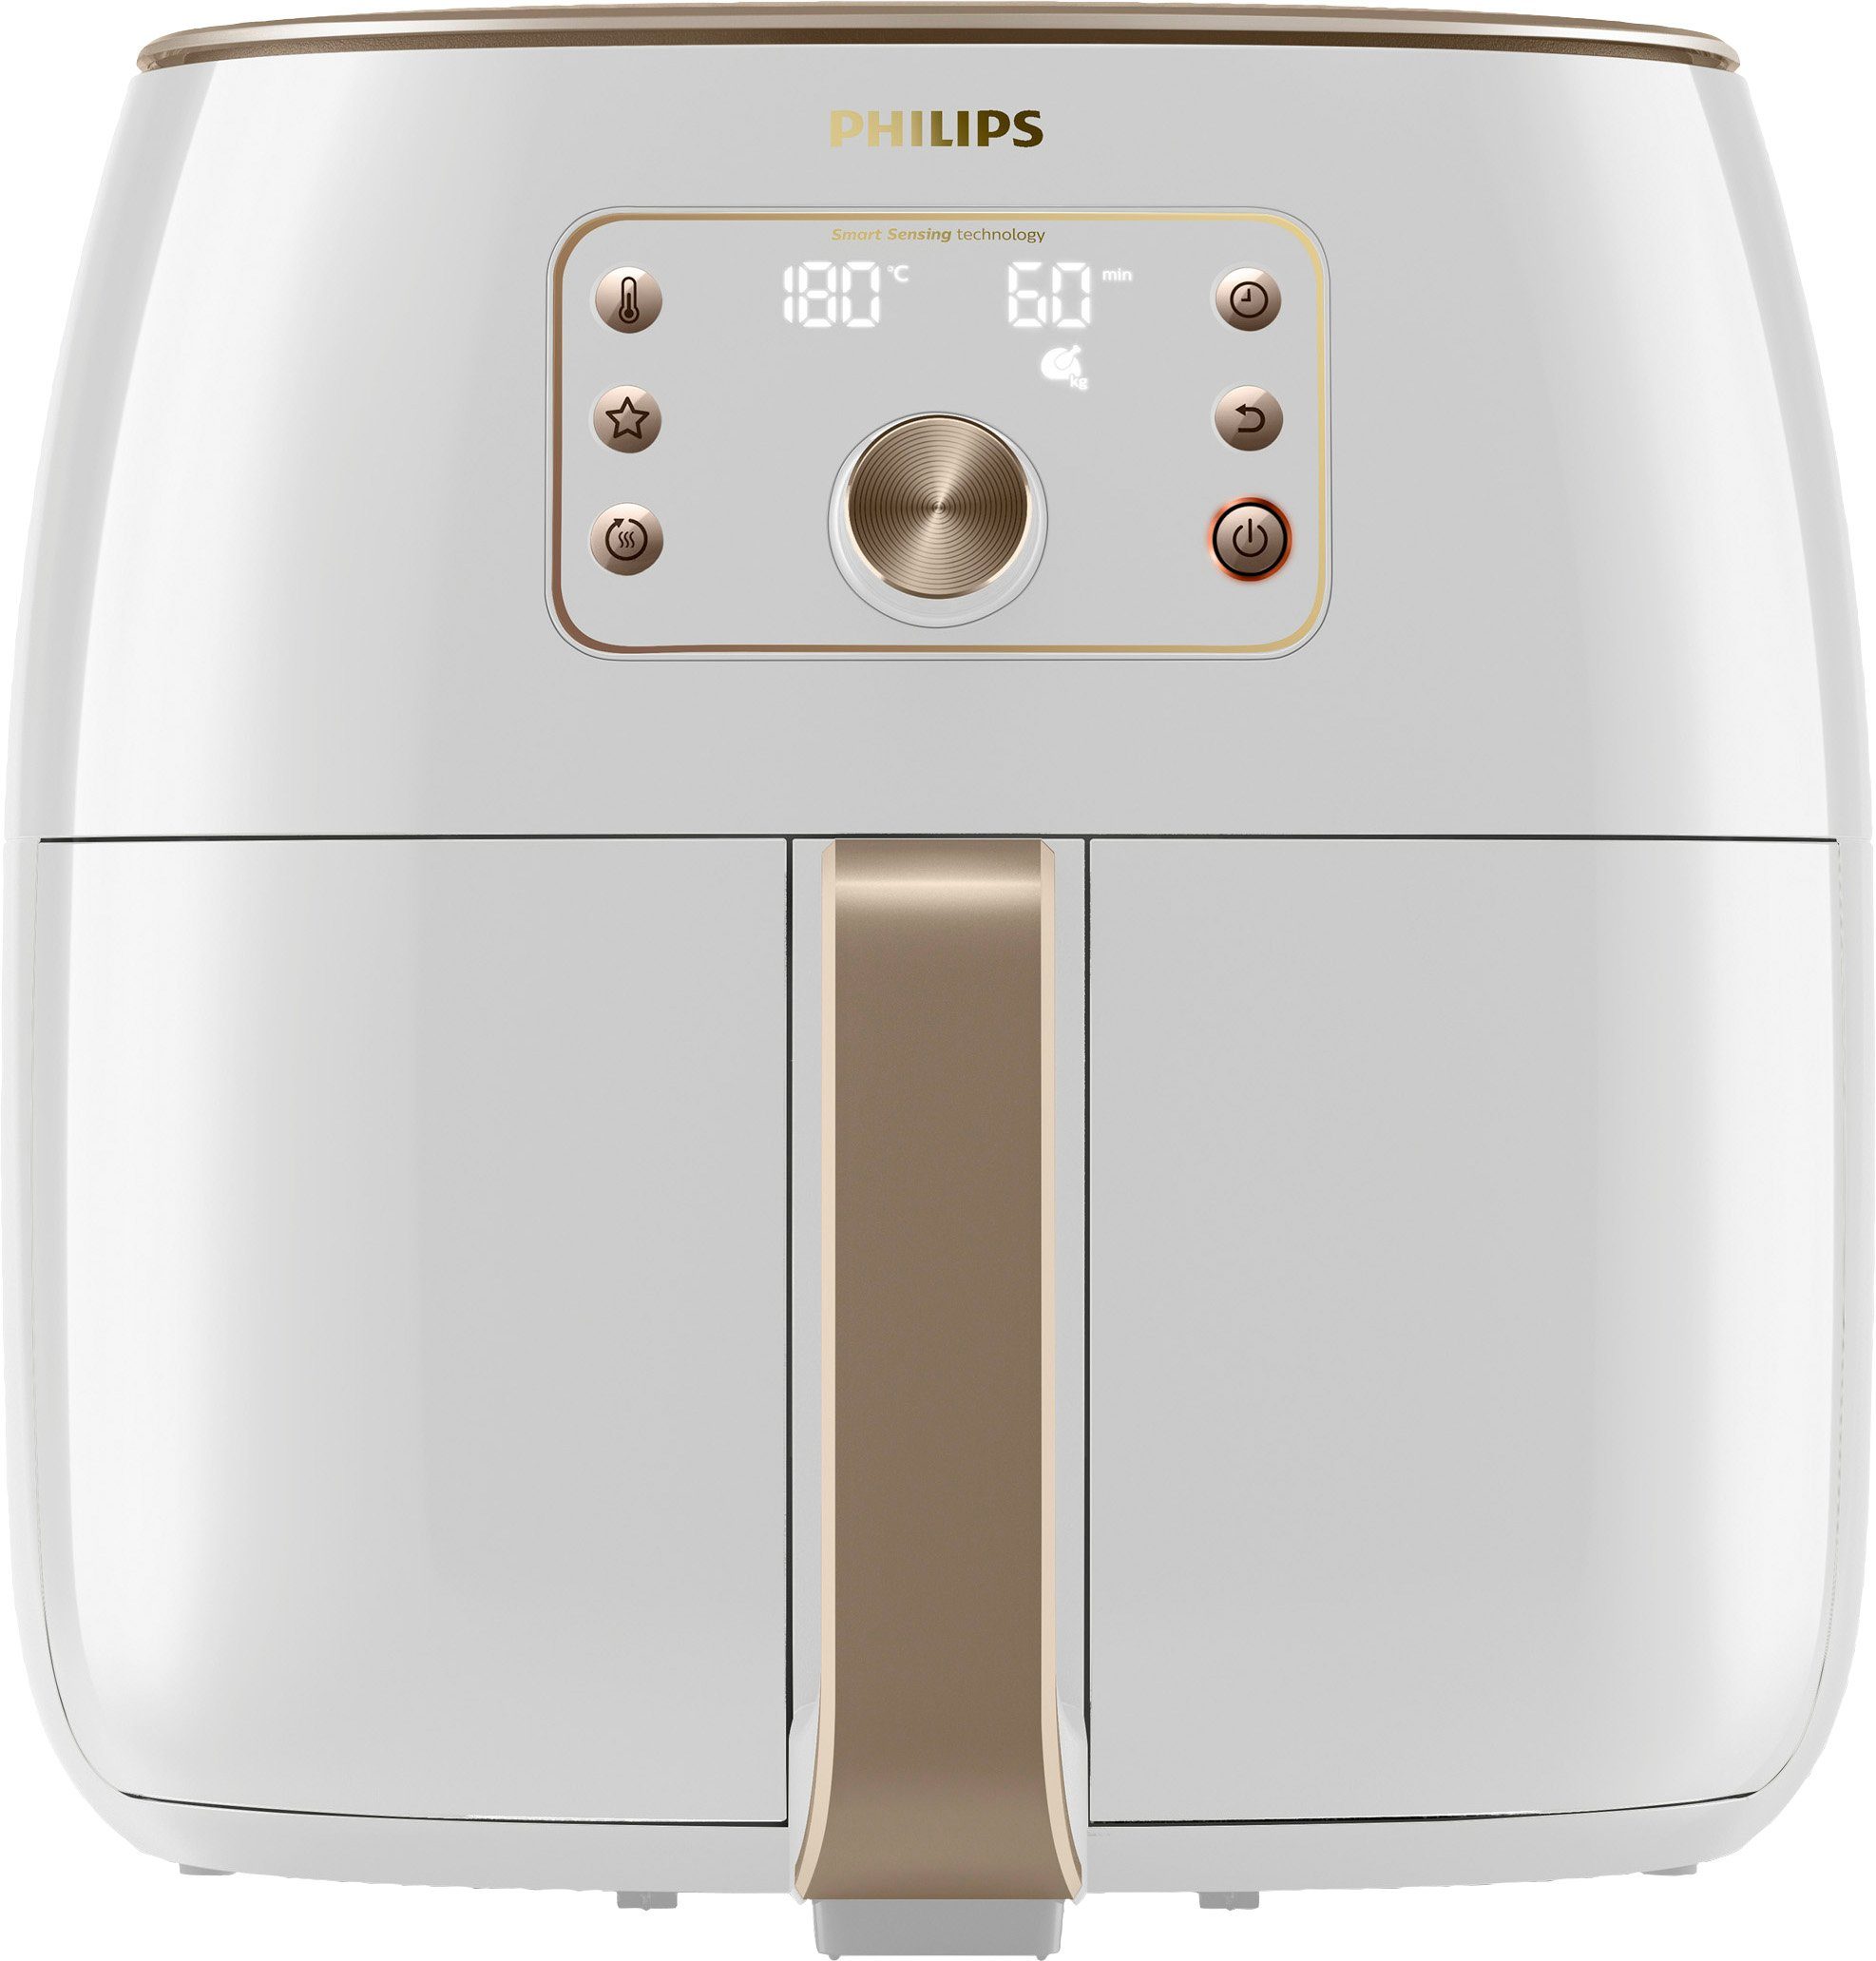 Philips Heißluftfritteuse HD9870/20 Airfryer Premium XXL, 2225 W, Smart Sensing Technologie Fassungsvermögen 1,4kg, weiß | Heißluftfritteusen